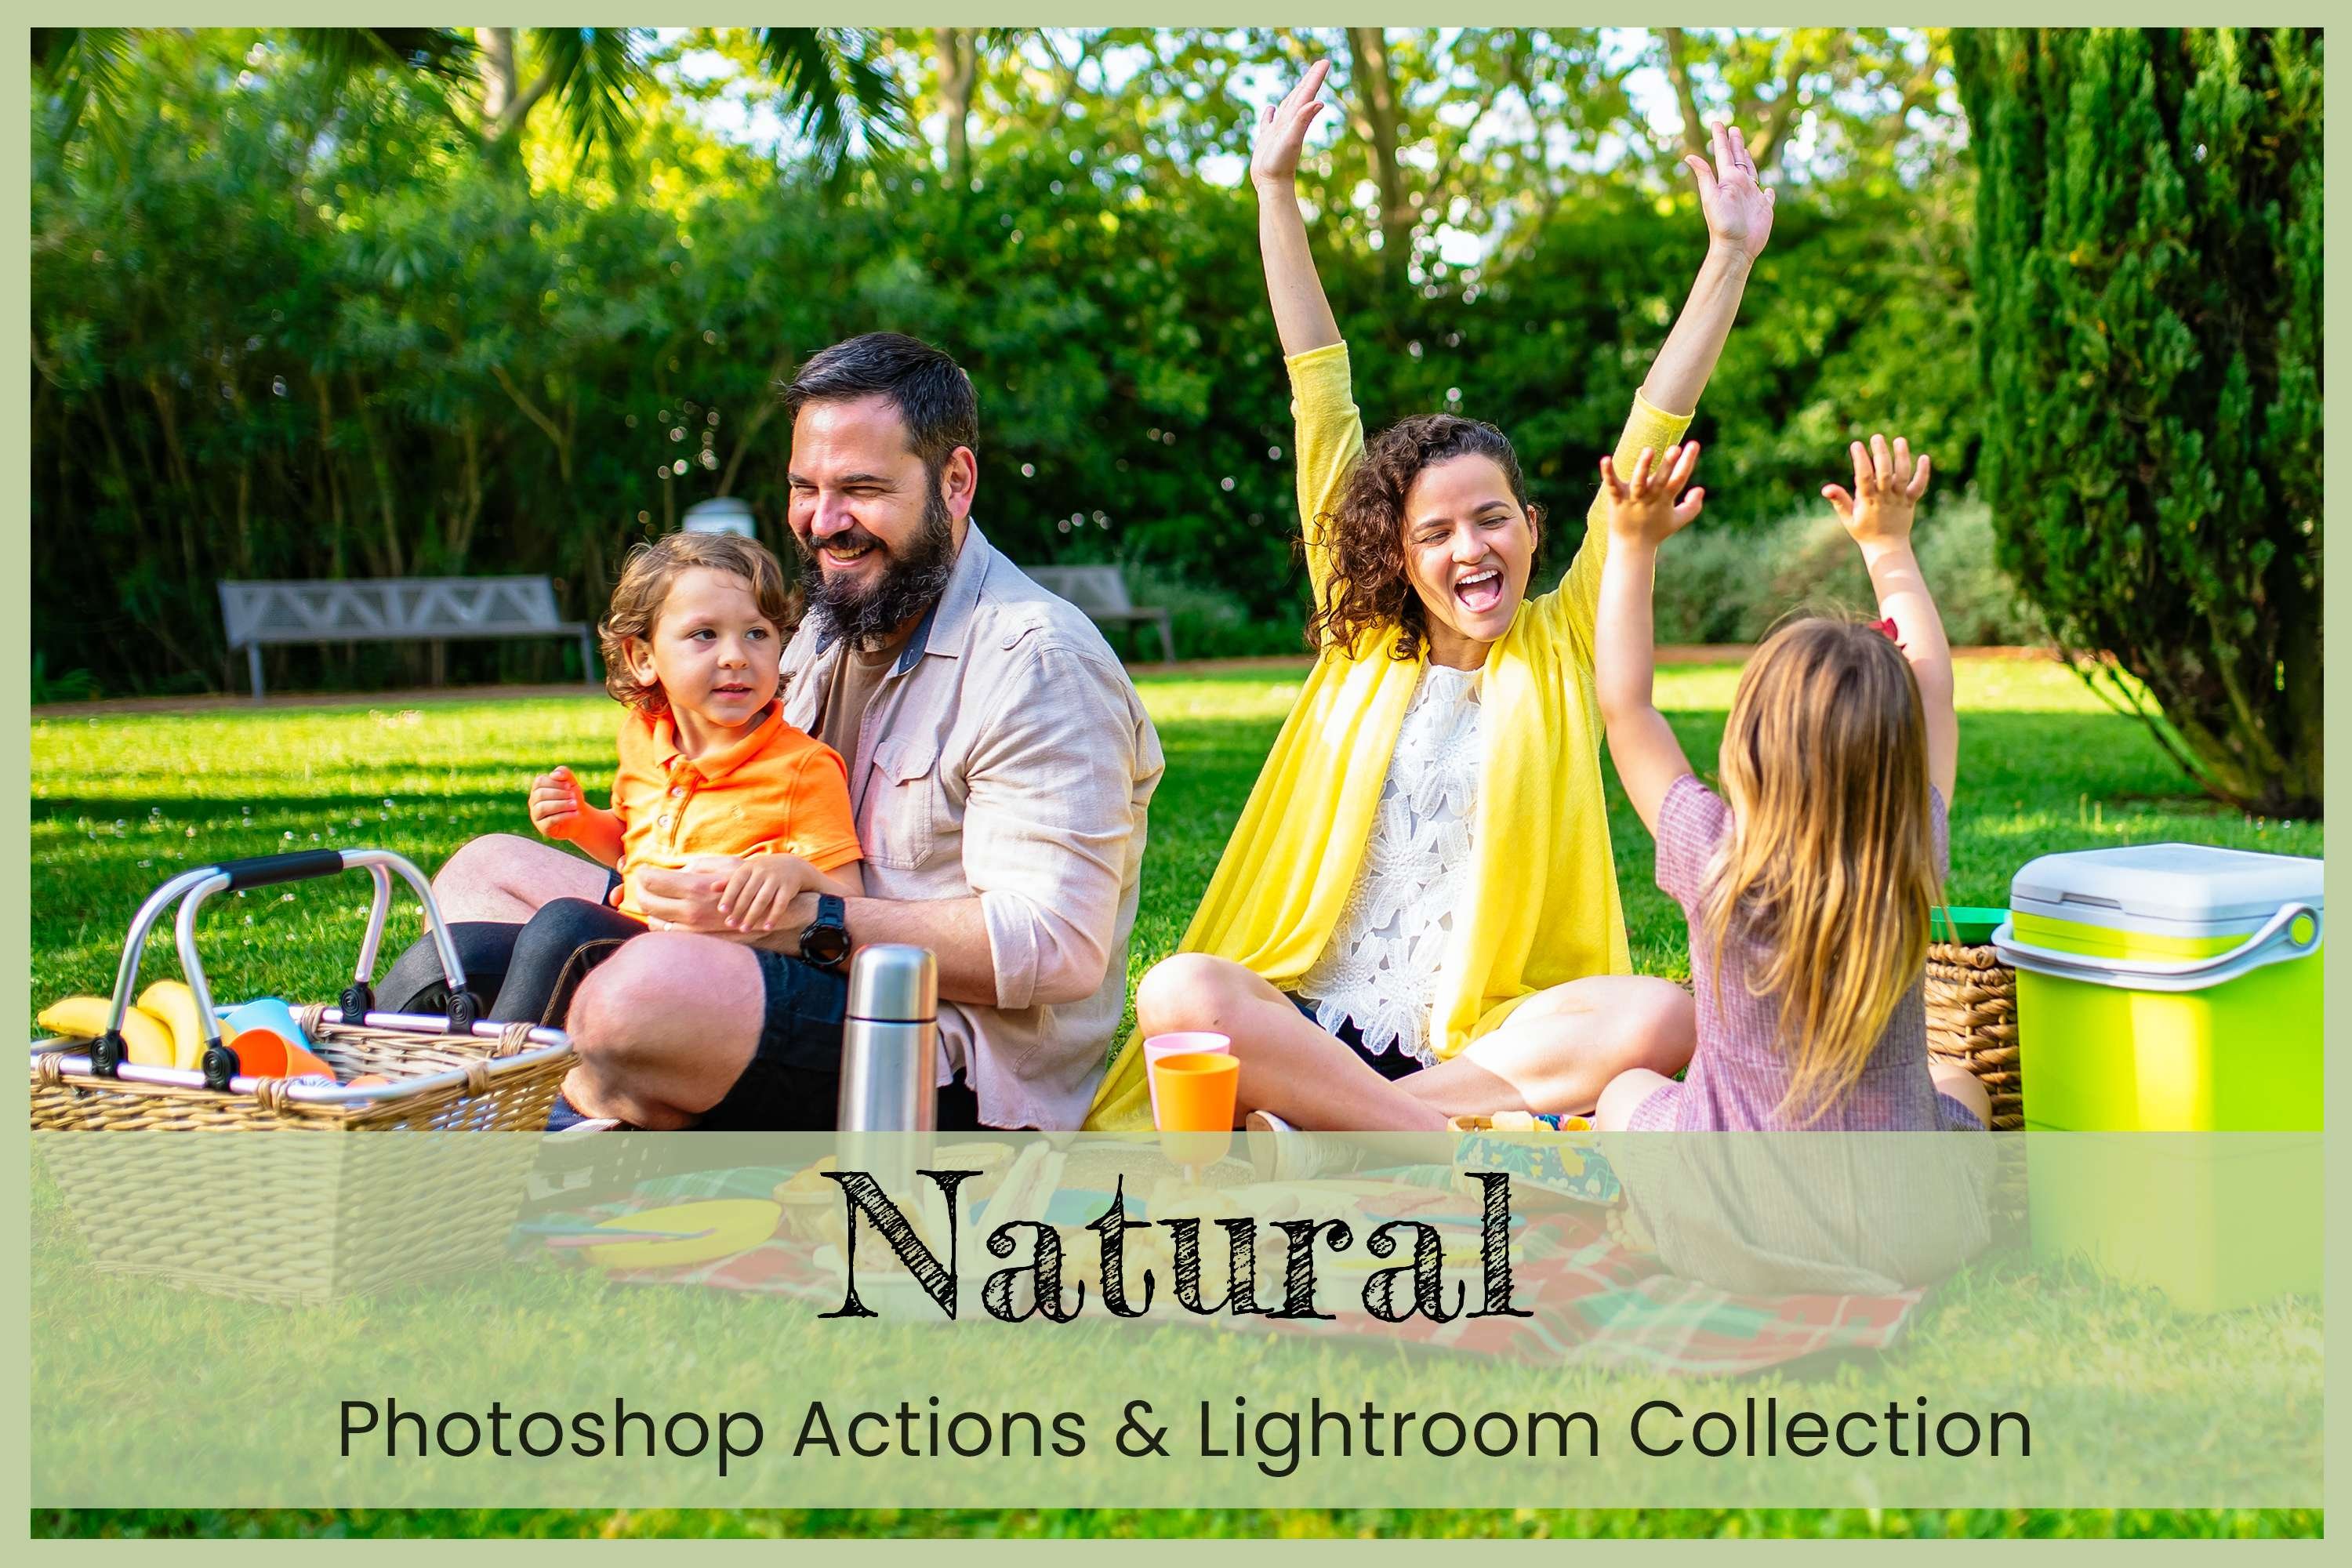 Natural Lightroom Presets Desktopcover image.